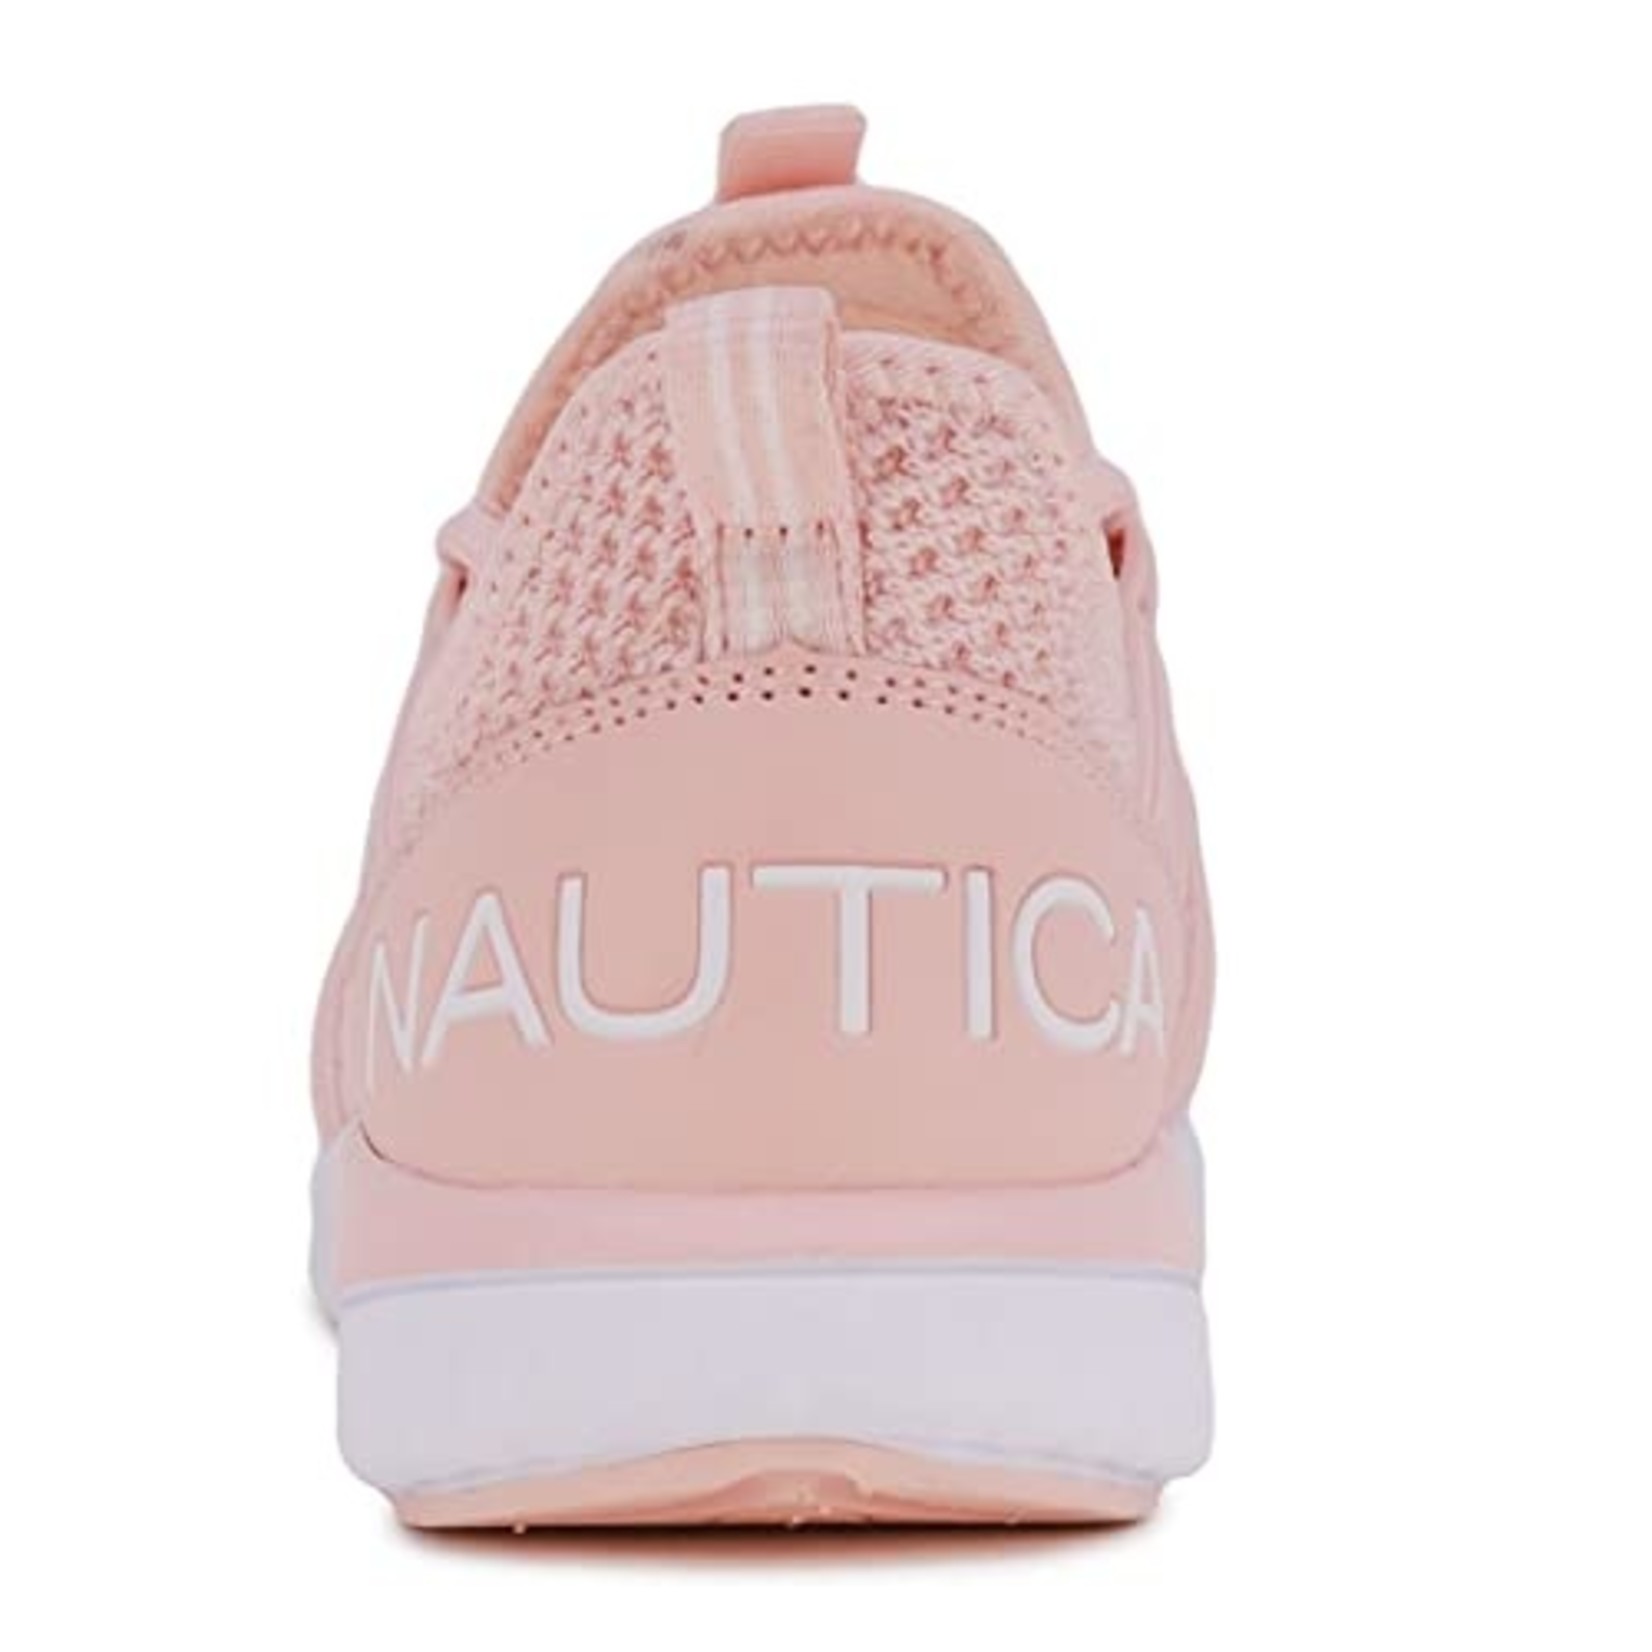 Nautica Nautica Pink Girls Athletic Running Shoes - 13